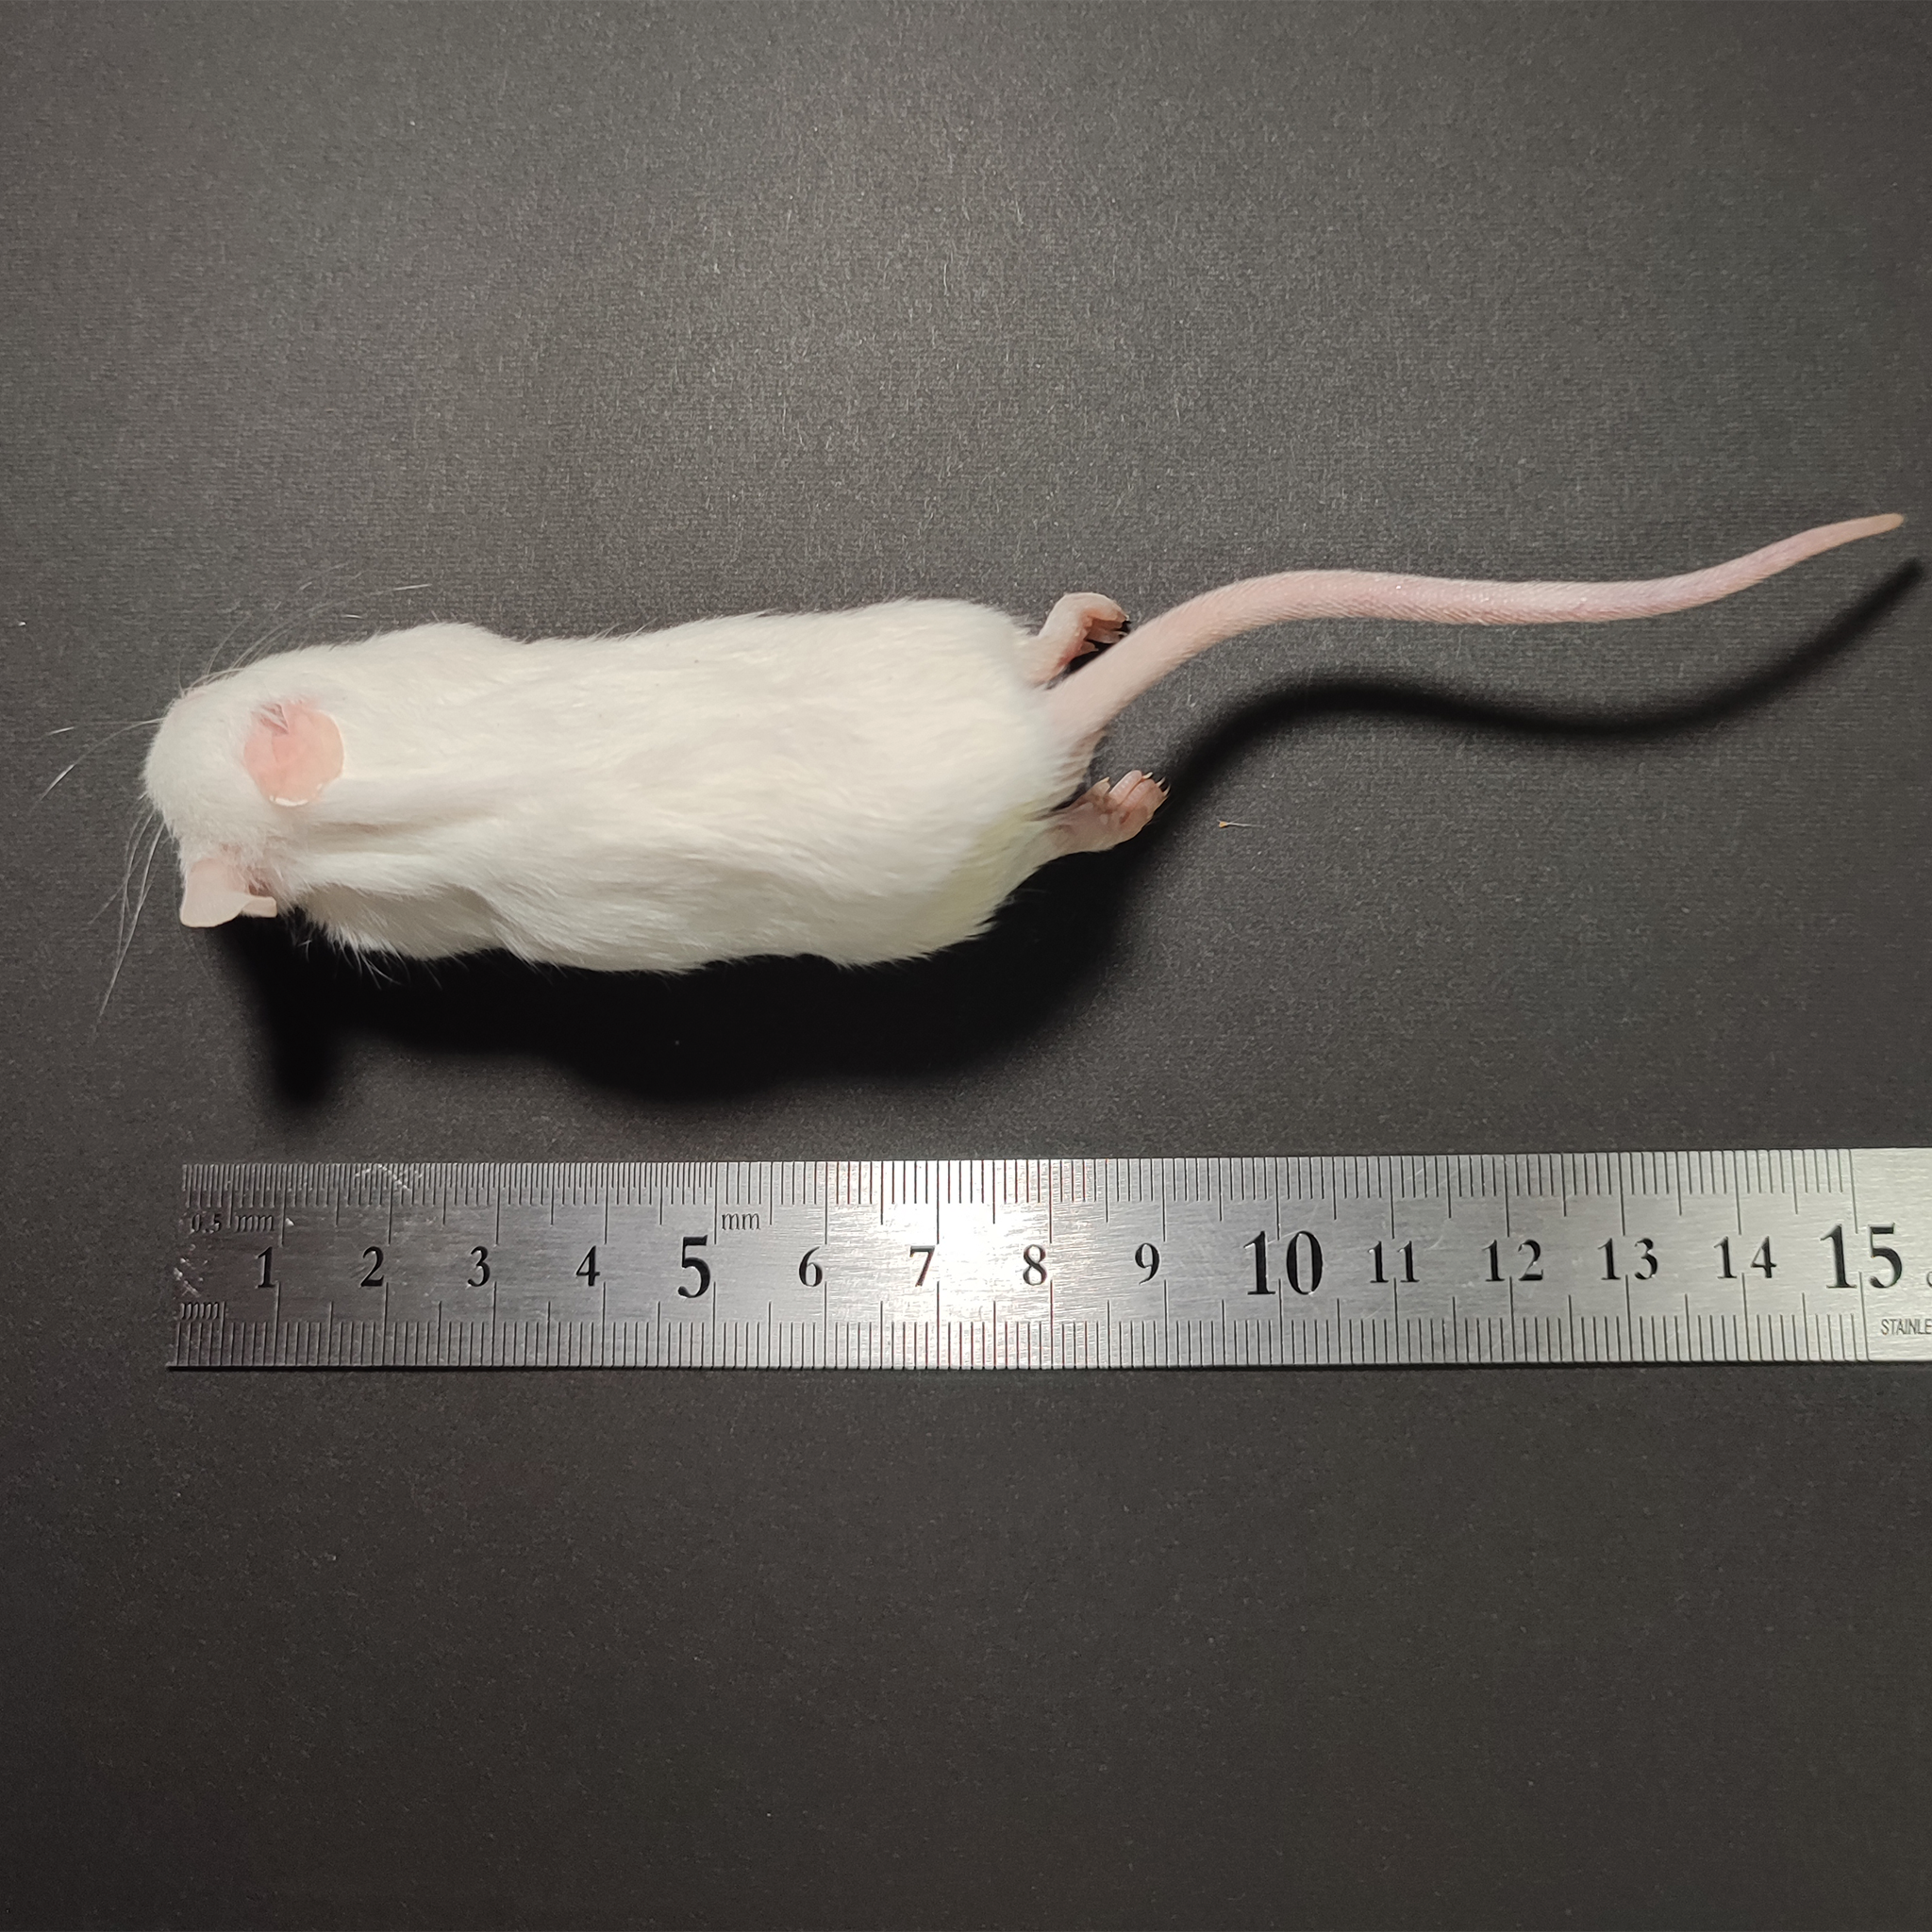 国産冷凍マウスアダルトLL30匹入@地域限定 - 爬虫類・両生類のエサ